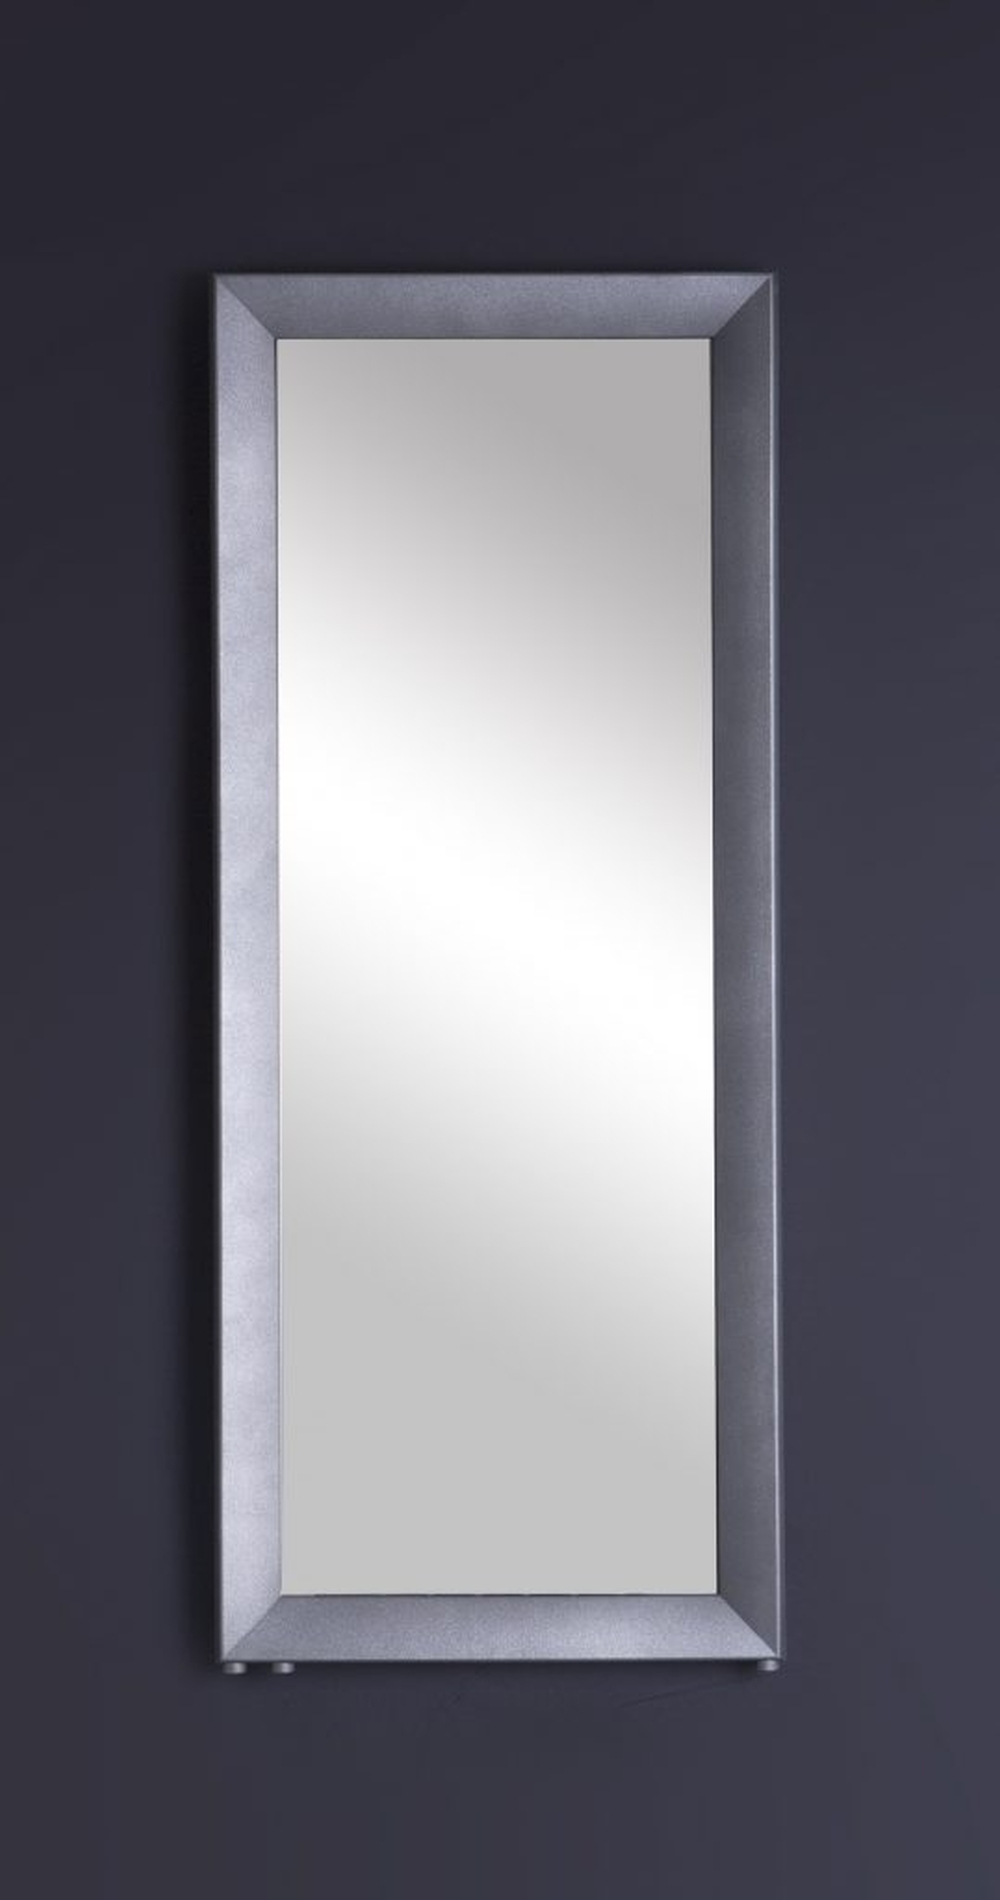 dekoracyjny grzejnik enix rama mirror, dekoracyjny grzejnik do mieszkania, enix rama mirror grzejnik dekoracyjny